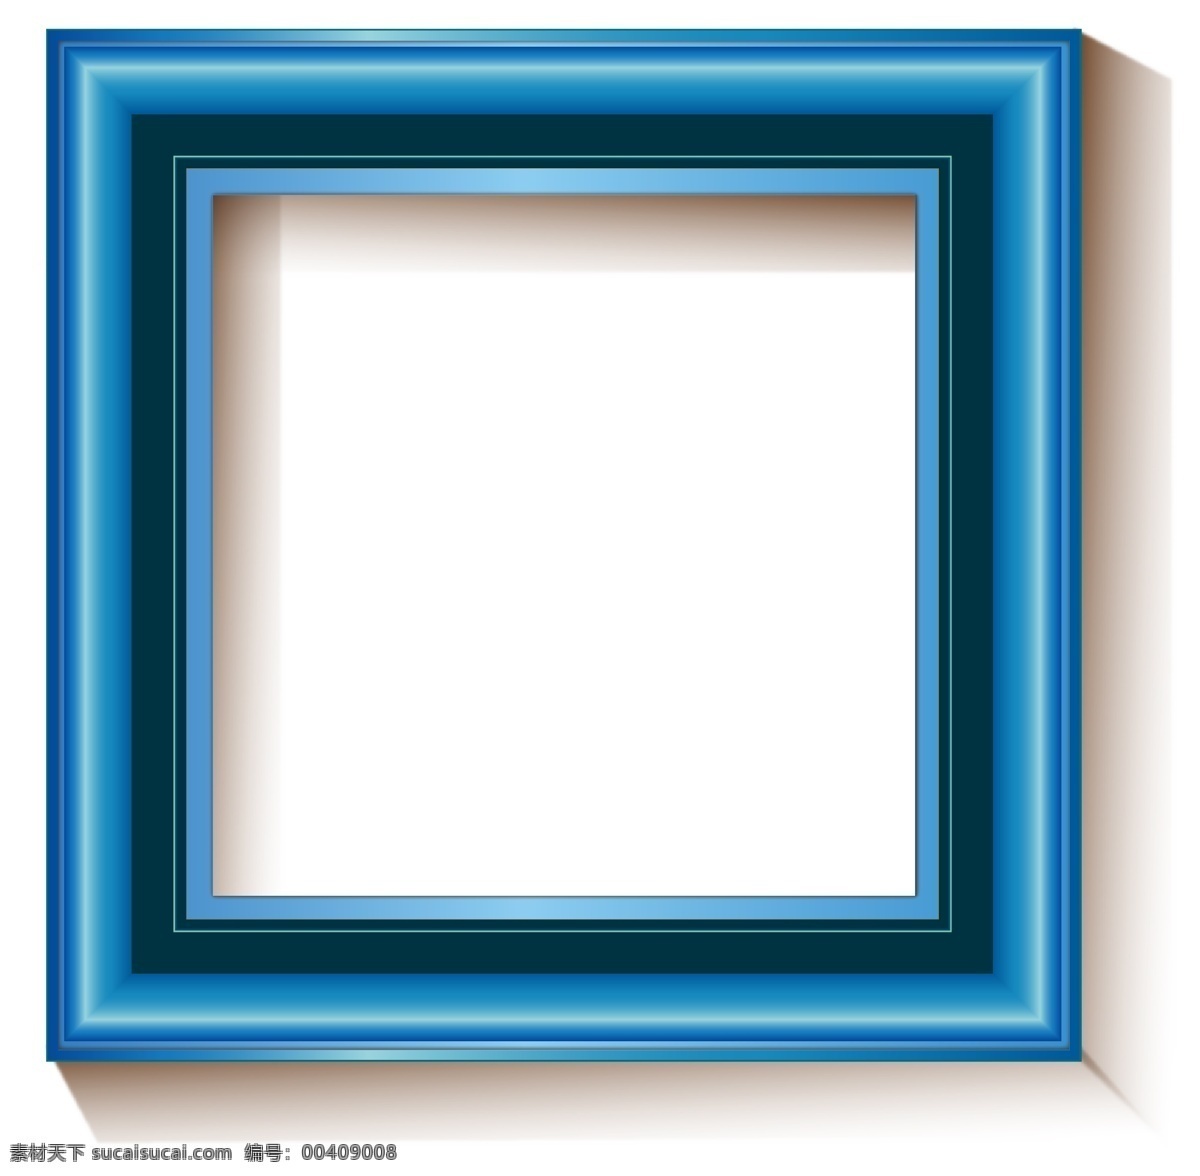 蓝色 油画 框 相框 蓝色相框 简约 创意相框 相框设计 木质相框 电视墙相框 装饰画框